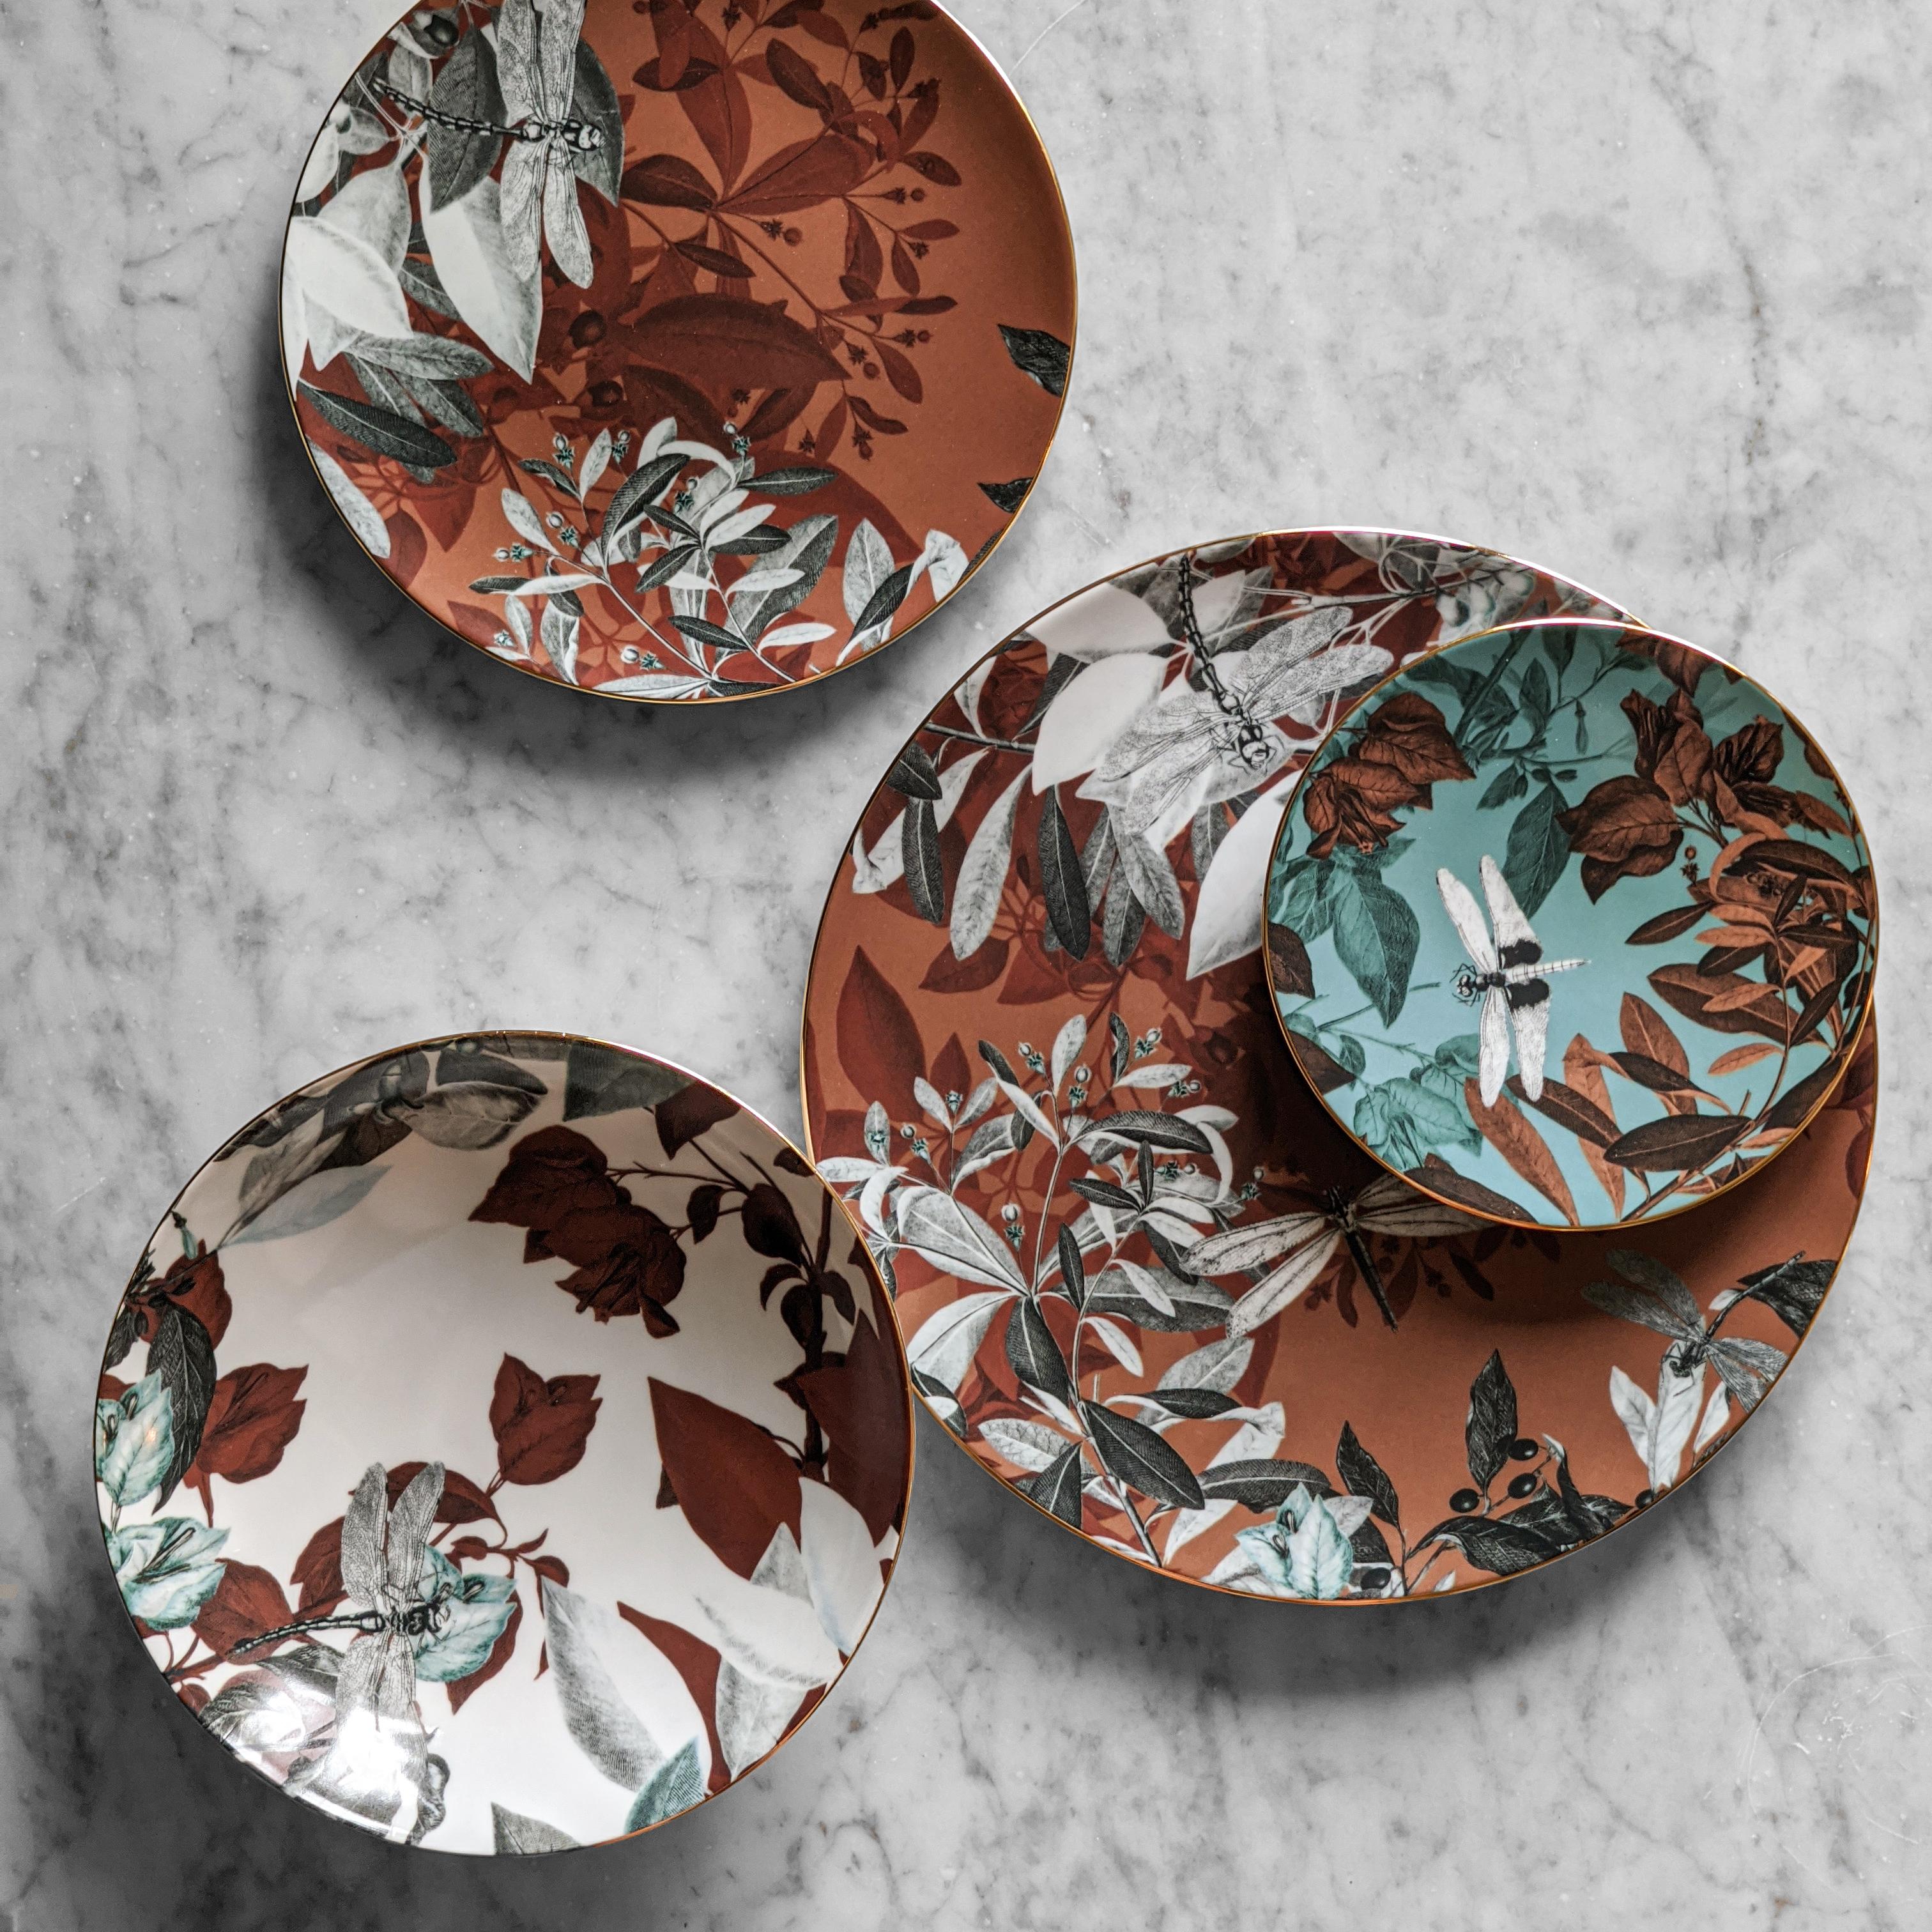 Black Dragon, Six Contemporary Porcelain soup plates with Decorative Design For Sale 4